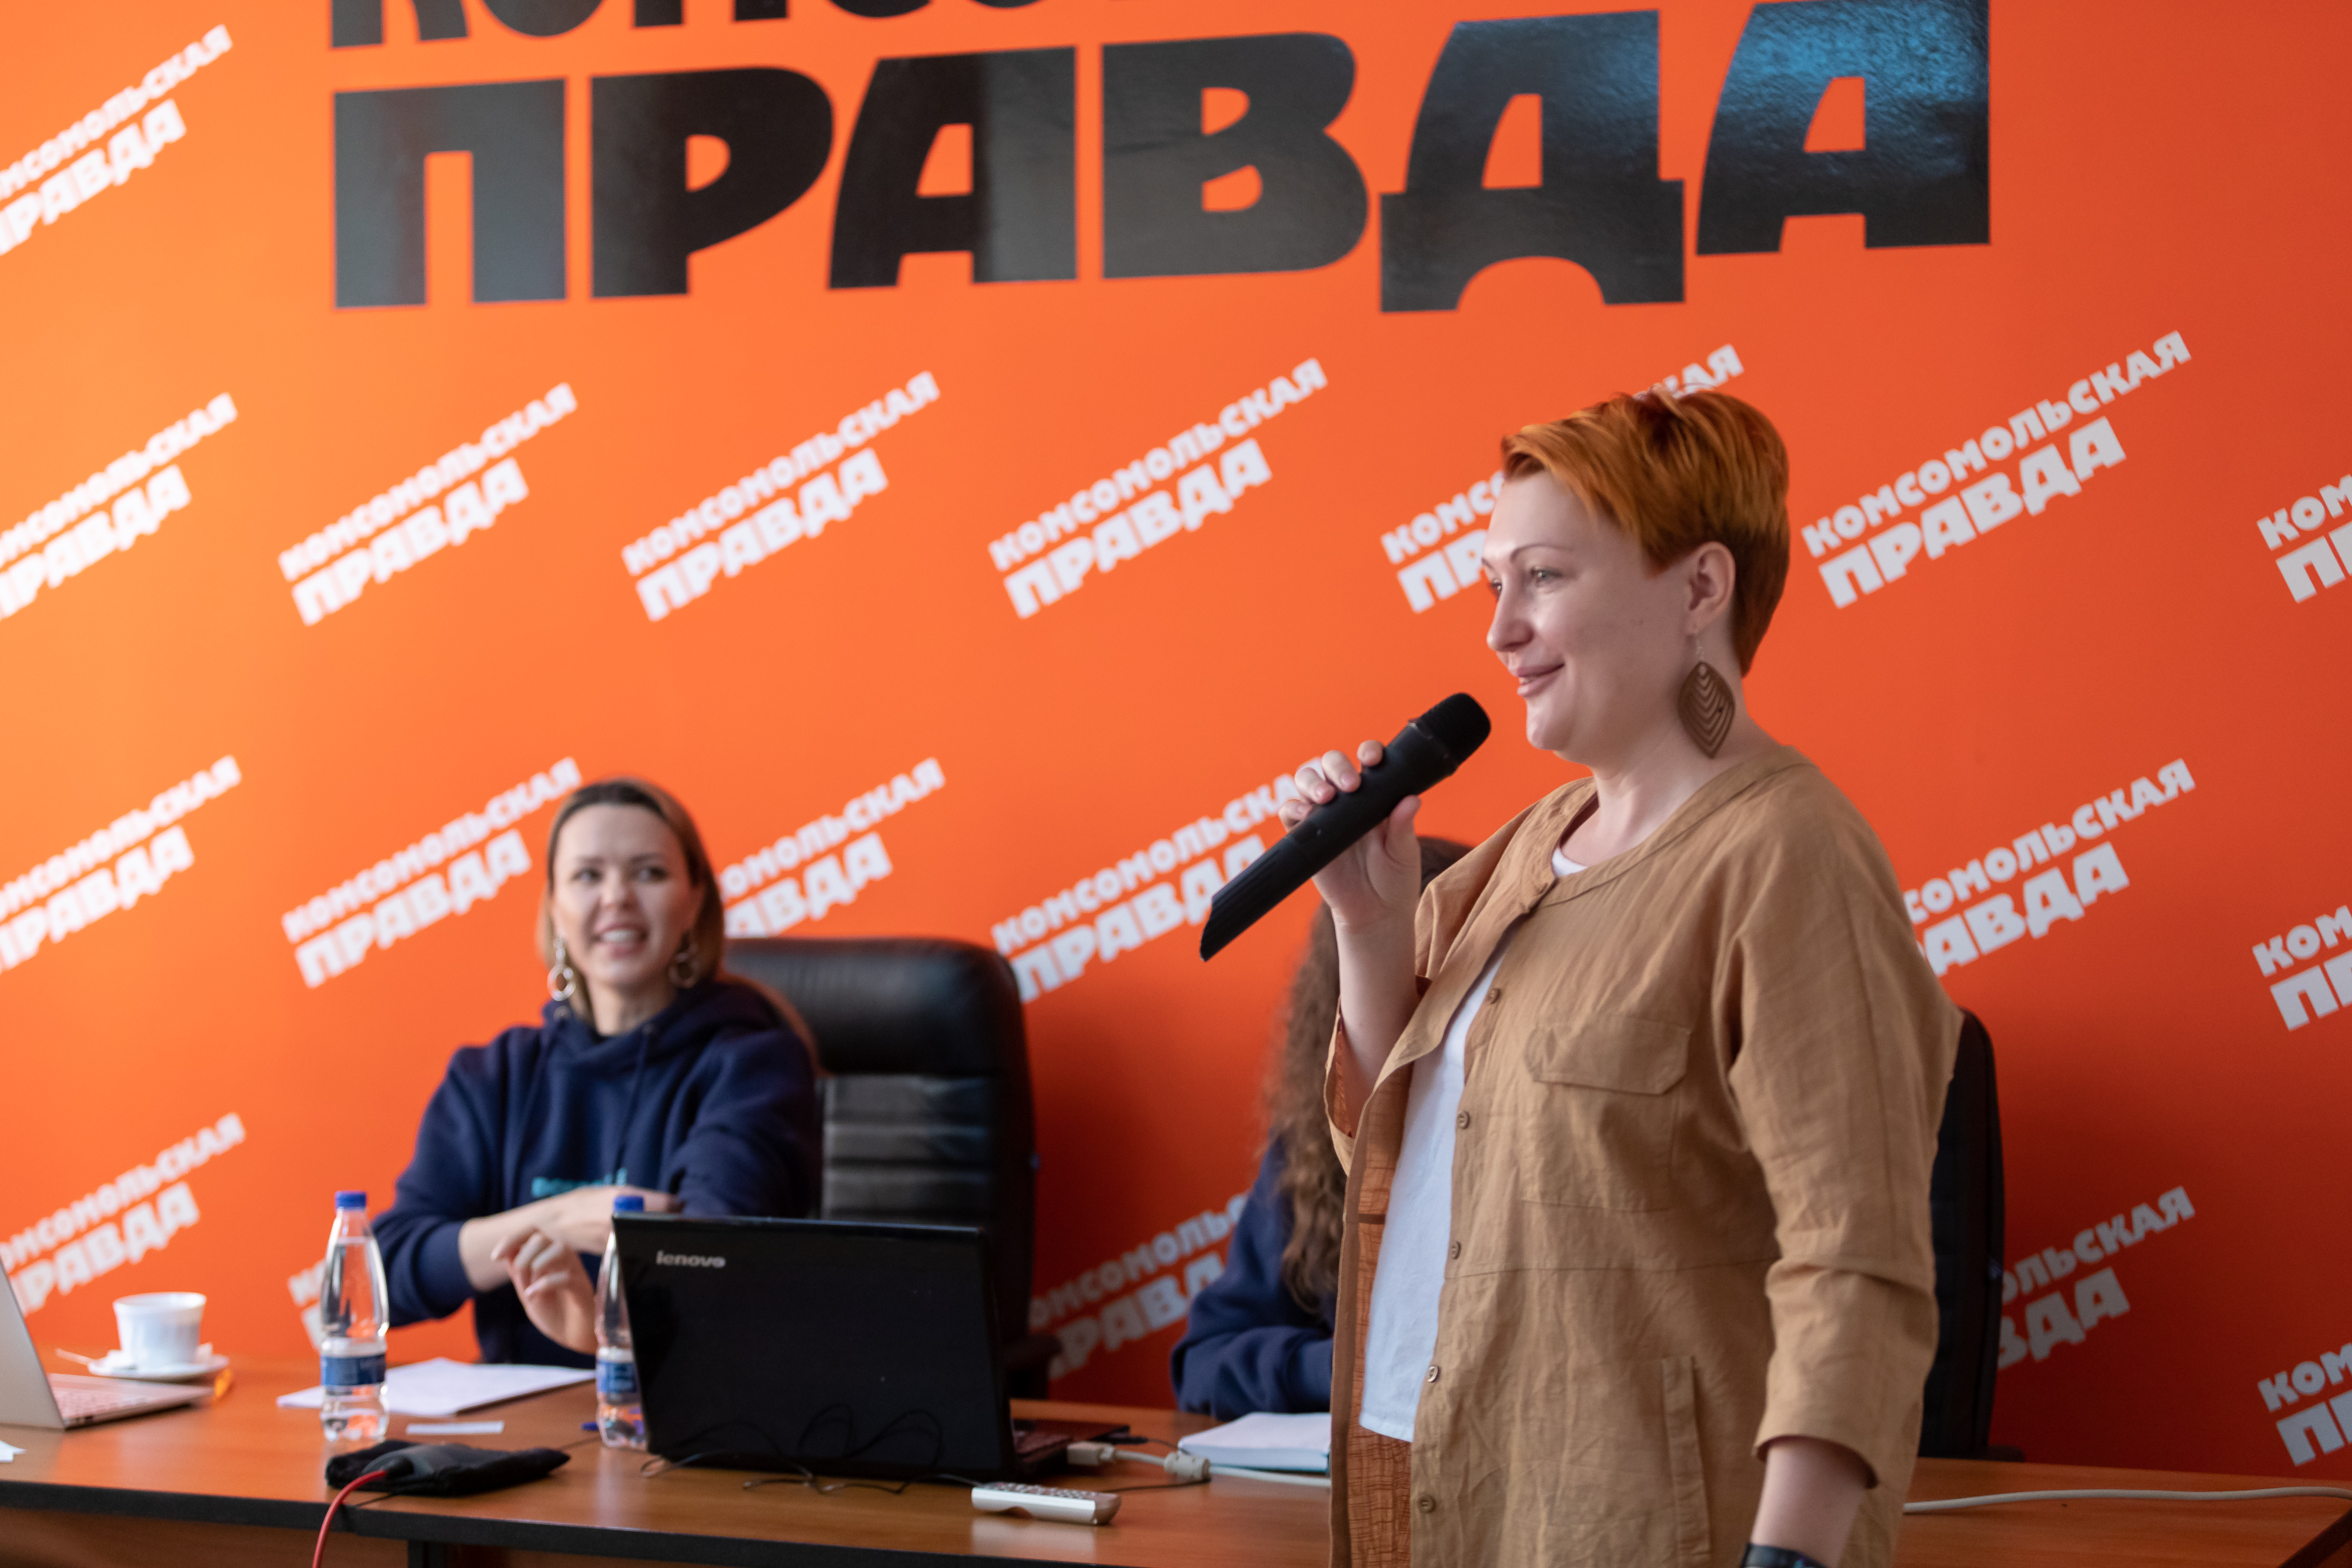  Анна Кузнецова, исполнительный директор Краевого центра поддержки и развития общественных инициатив.  Фото: Мария Ленц. 